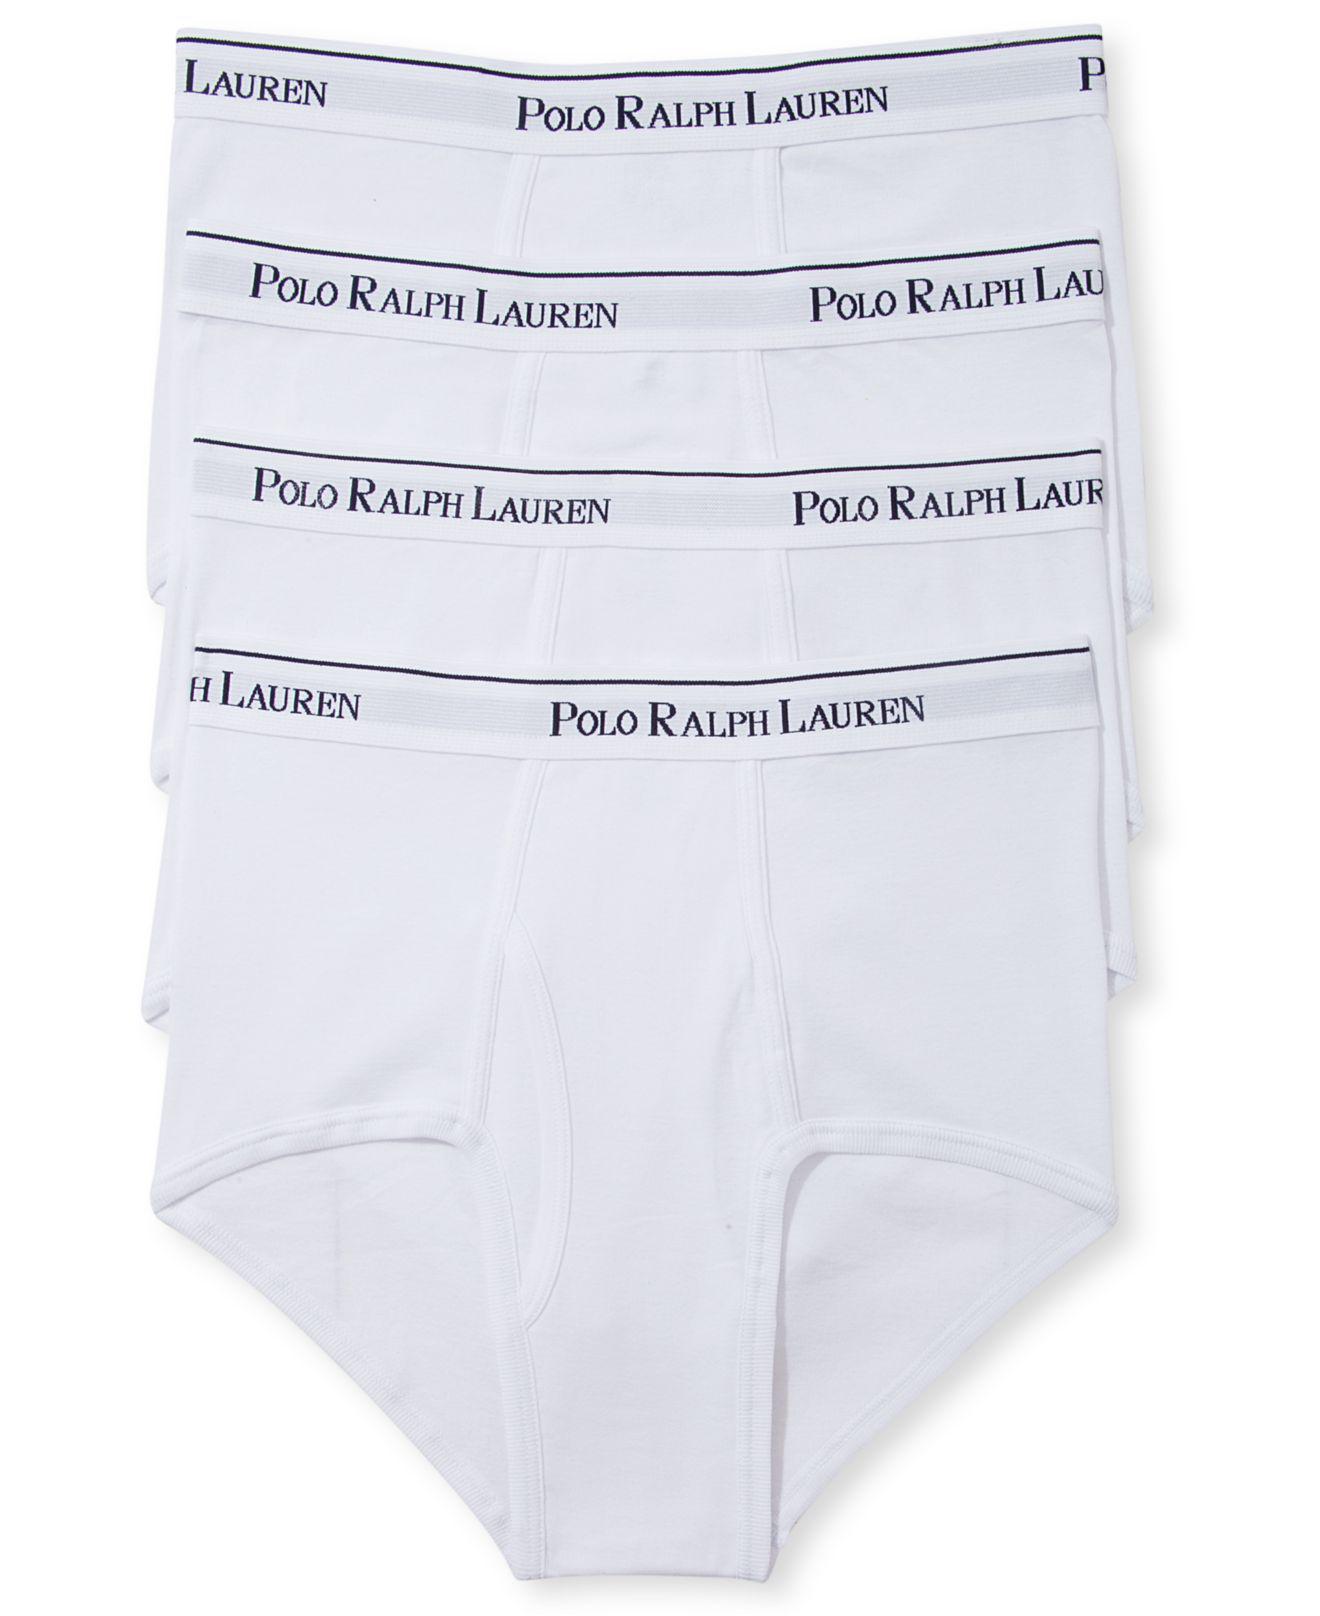 Polo Ralph Lauren Long Leg Boxer Briefs, 3 Pack - Macy's